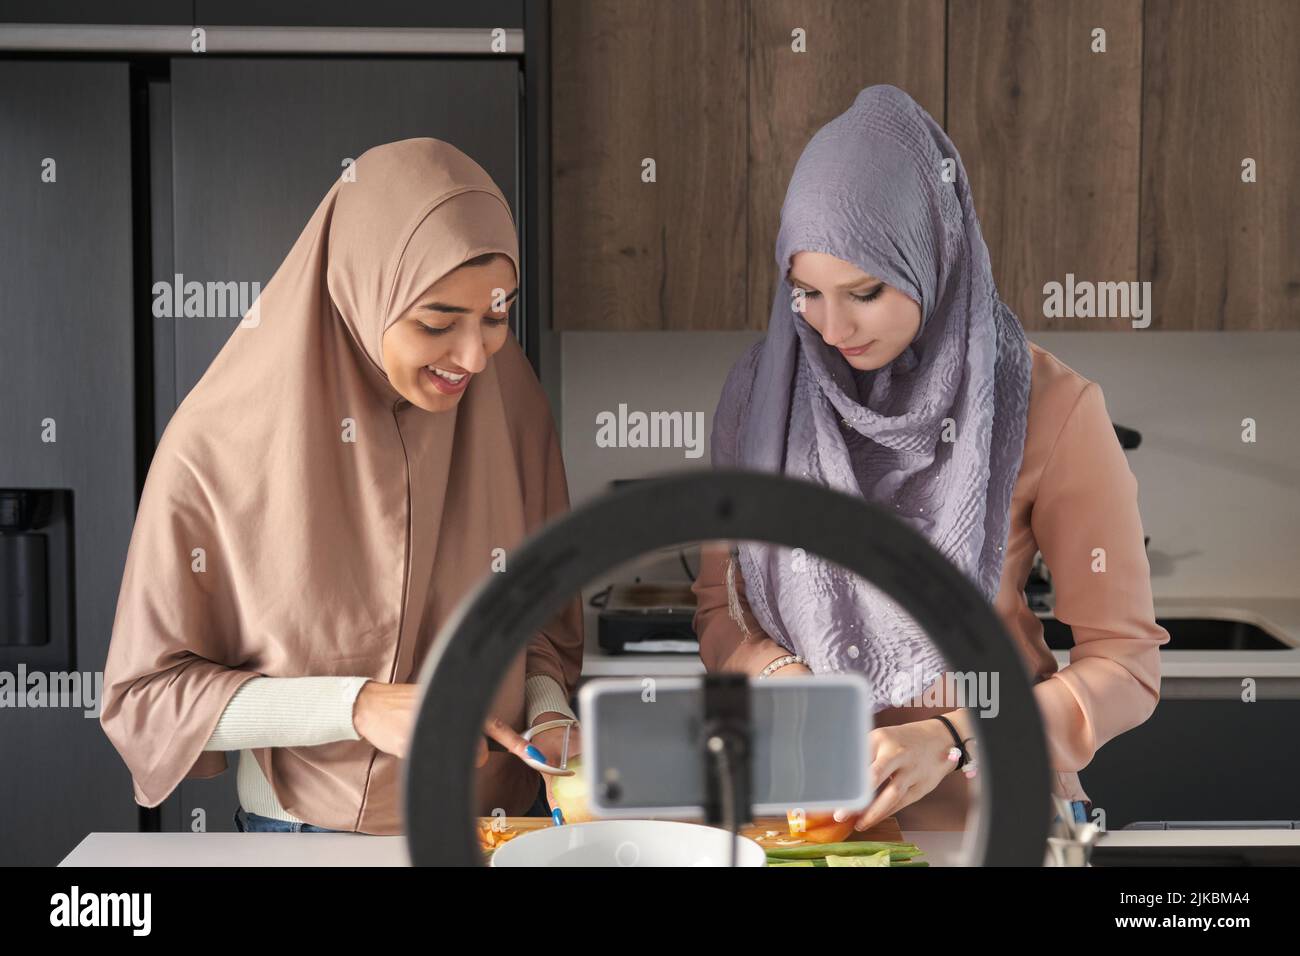 Deux bûcherons musulmans parlant tout en faisant une vidéo de cuisine dans la cuisine. Banque D'Images